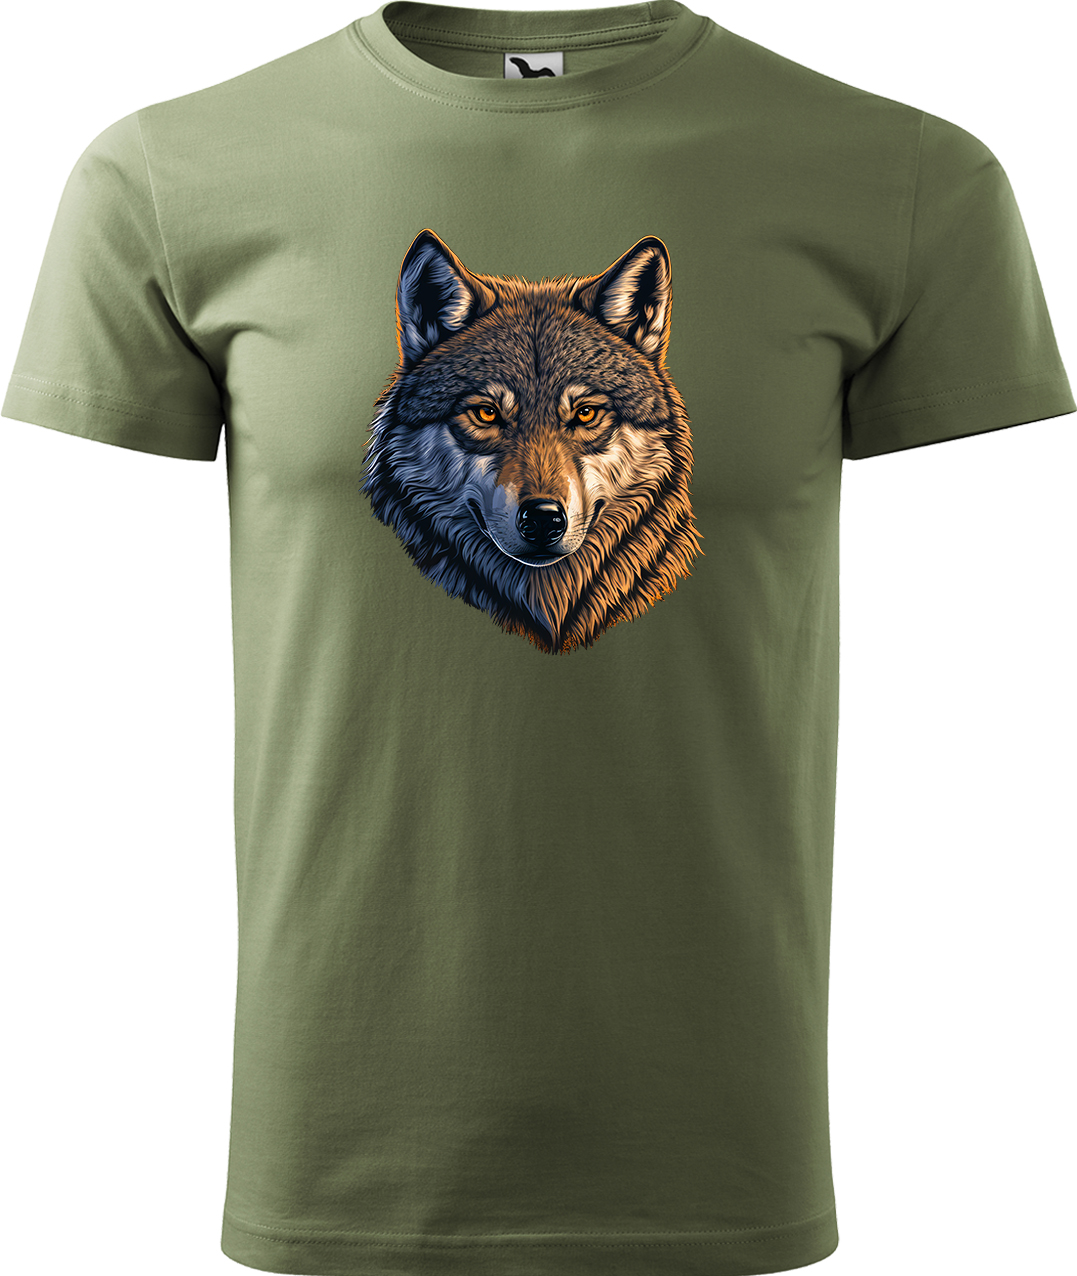 Pánské tričko s vlkem - Hlava vlka Velikost: 4XL, Barva: Světlá khaki (28), Střih: pánský